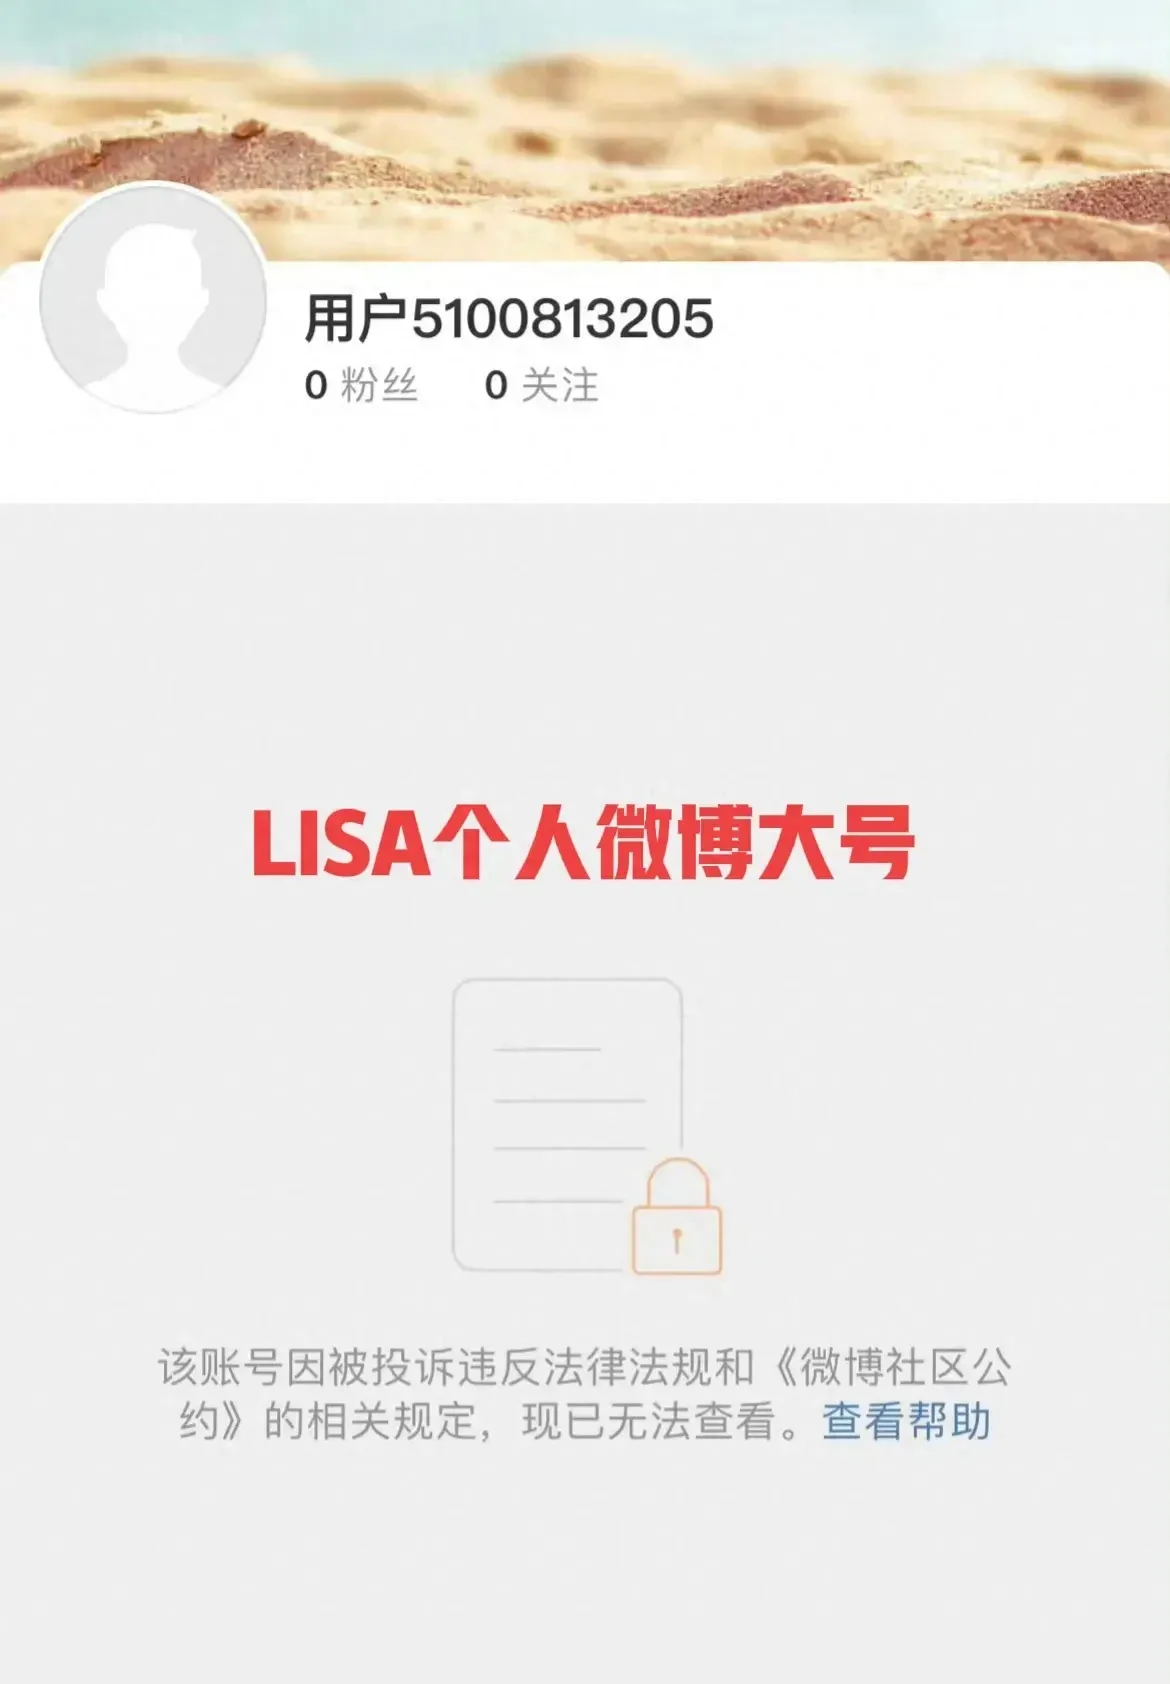 Lisa 19岁+演出有何影响？Lisa微博账号被封，杨颖传闻因“观看”而被禁言 - 哔哩哔哩